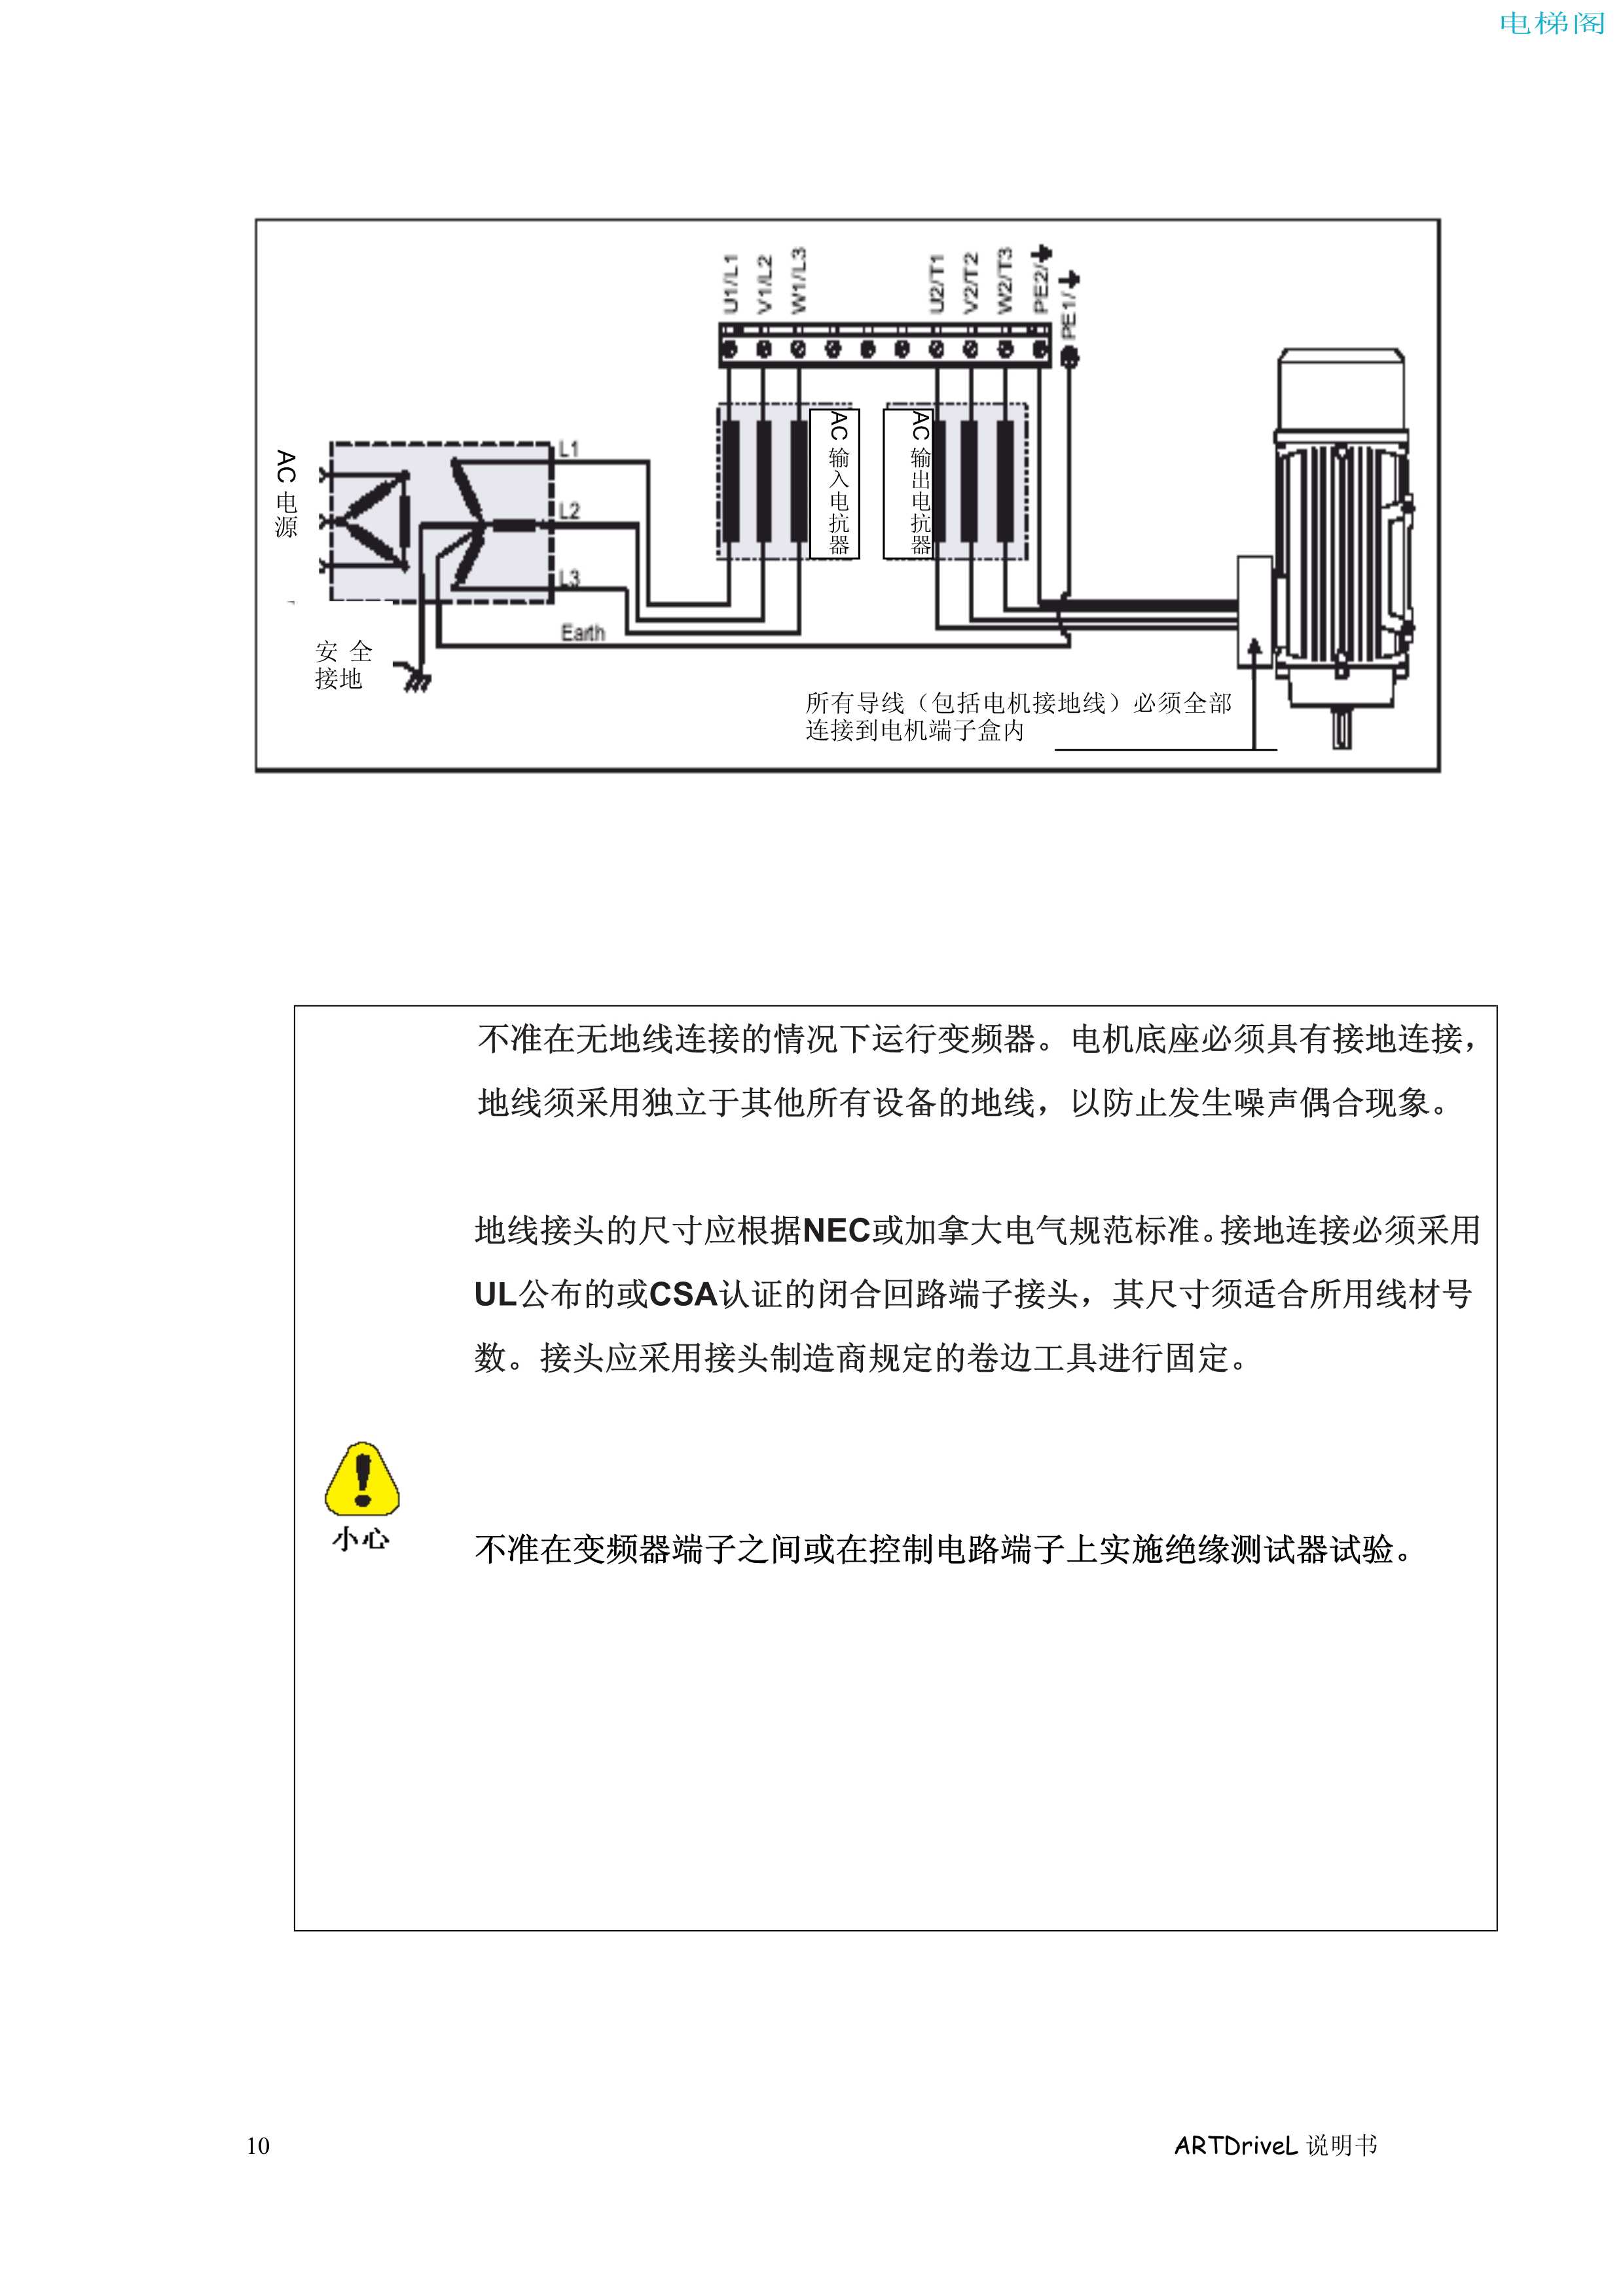 西威变频器电梯专用矢量控制型中文版说明书一安全须知